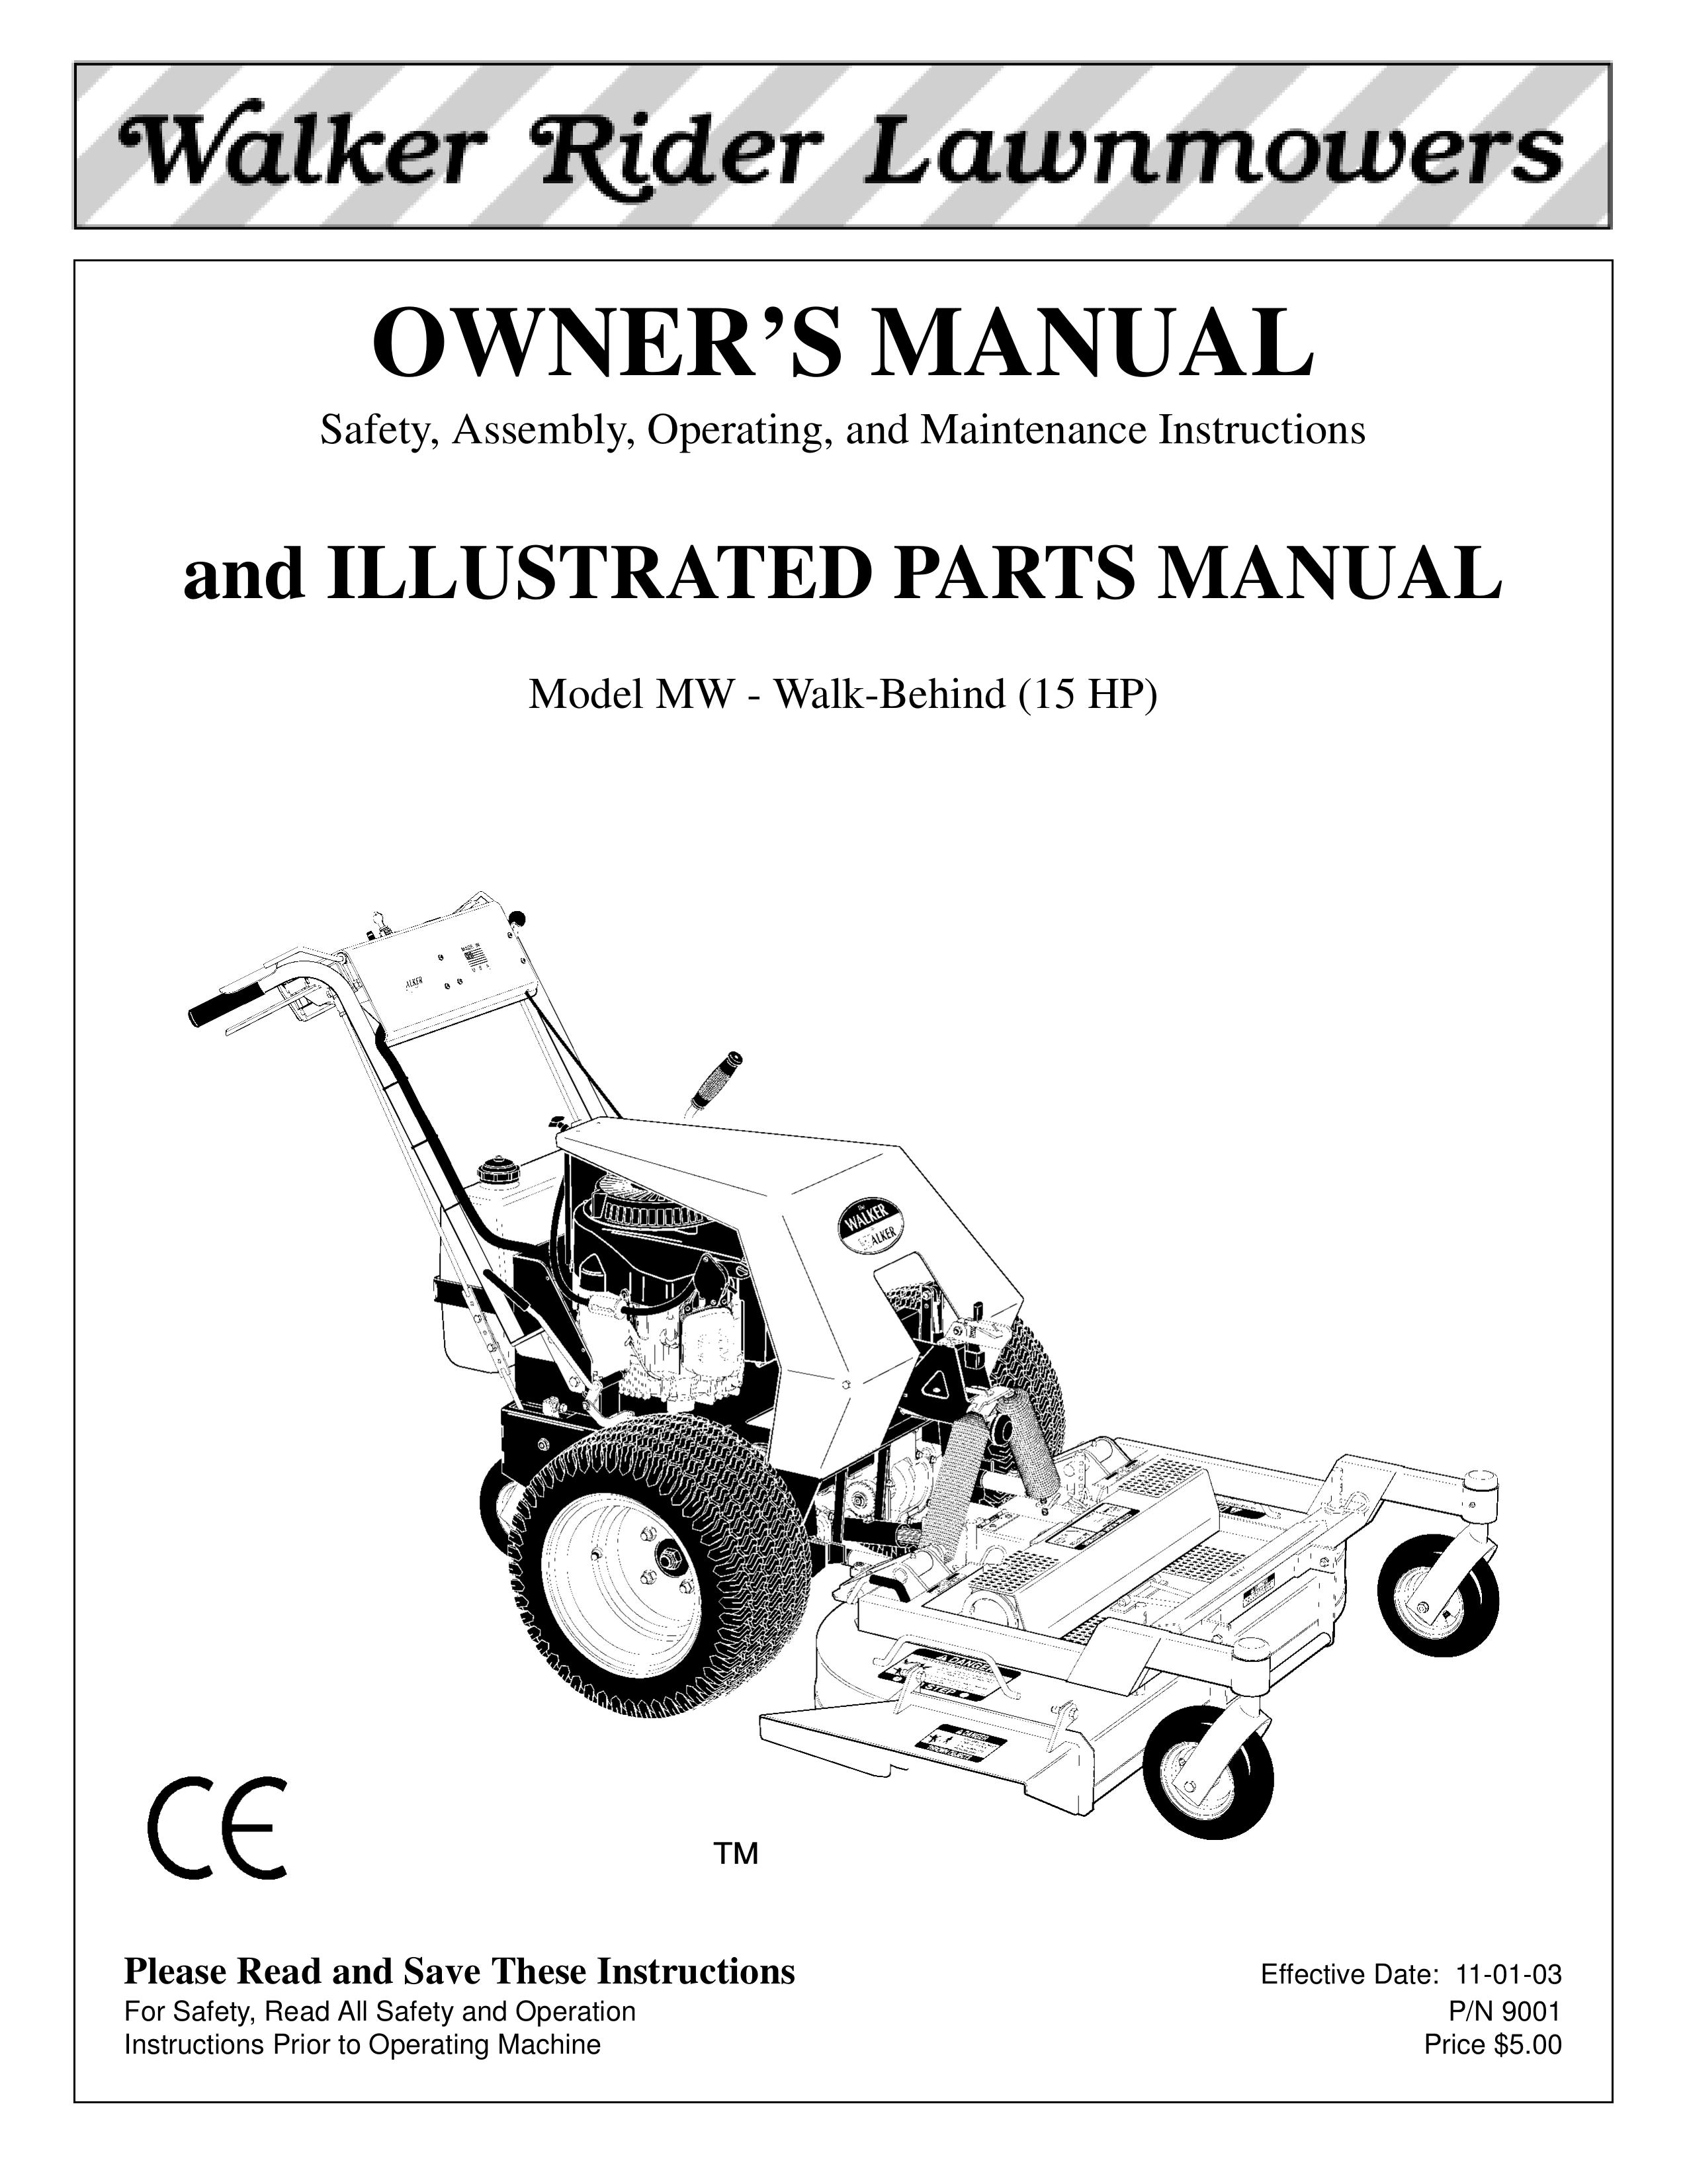 Walker MW 15 HP Lawn Mower User Manual